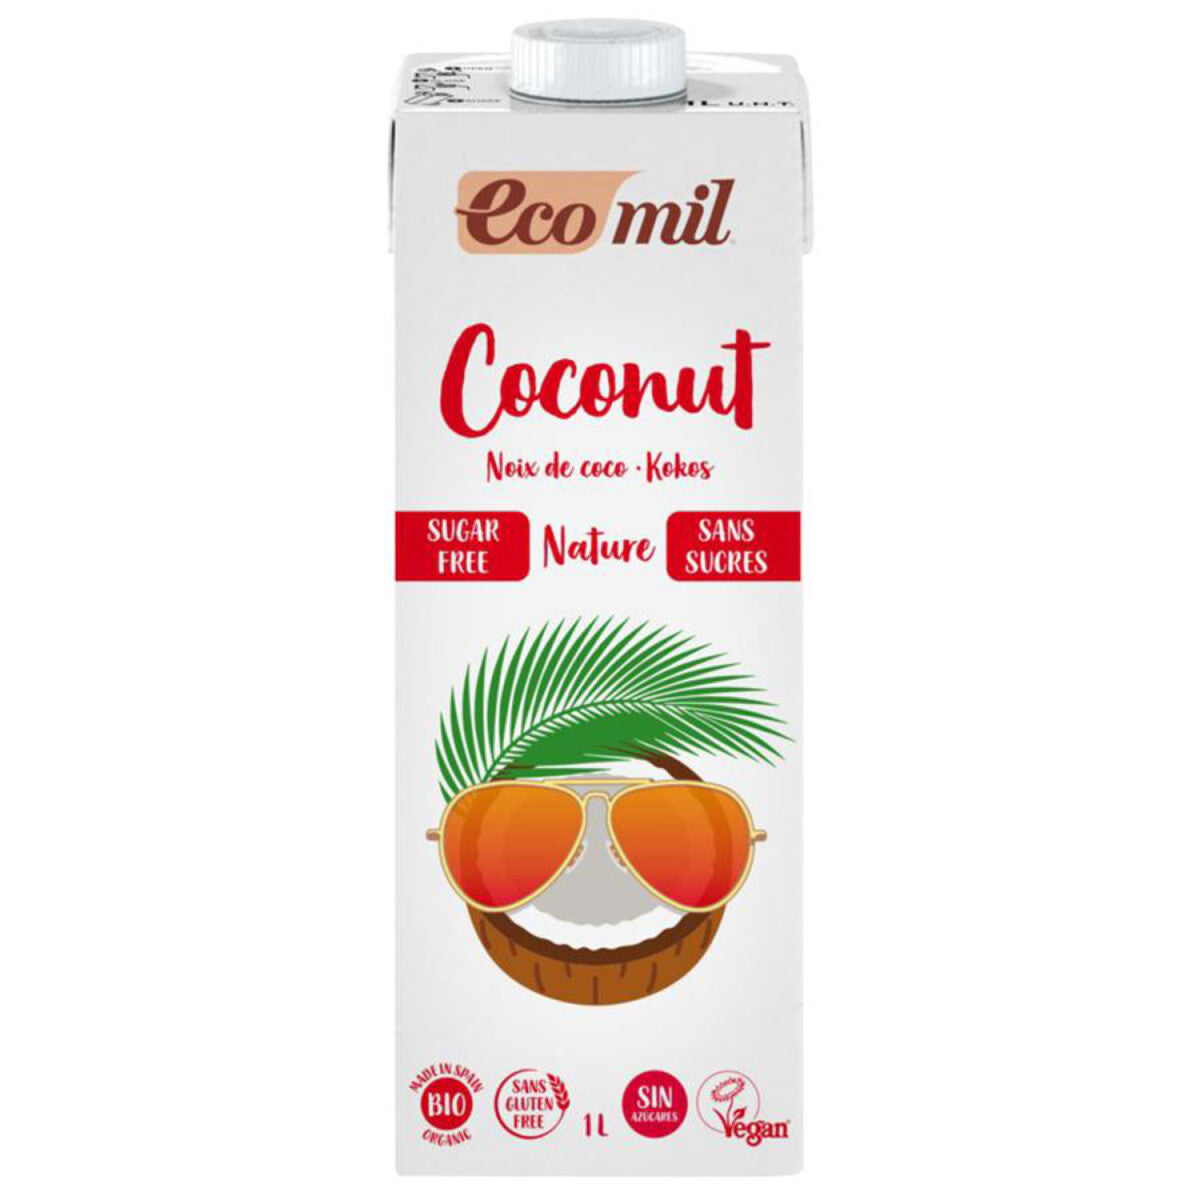 ECOMIL Kokosnussdrink natur, zuckerfrei - 1 l